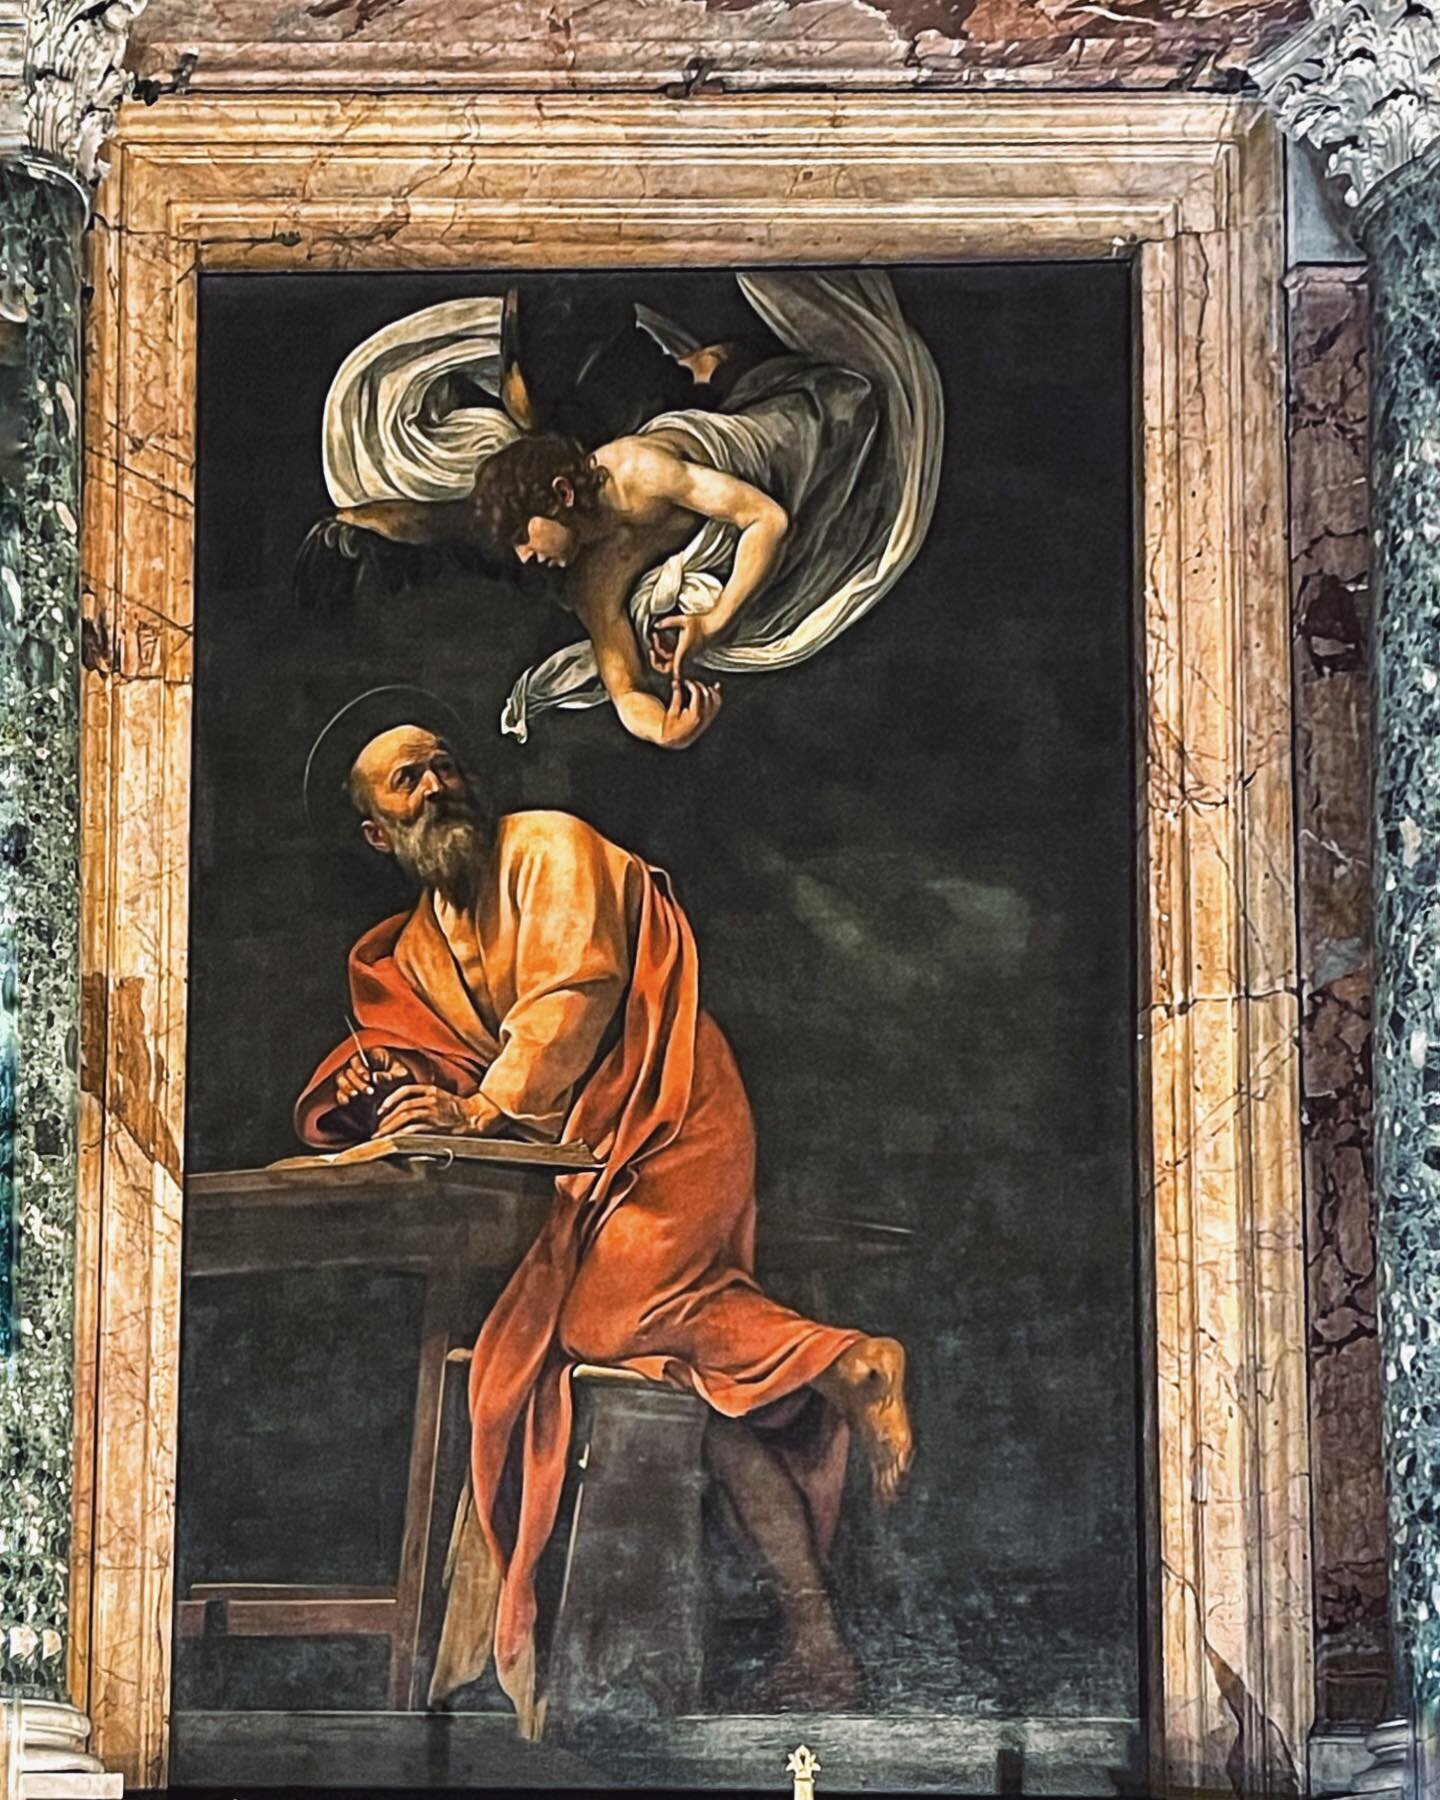 SPOILER: Post lungo e riflessivo

Caravaggio lo conoscono tutti e piace a tutti.
Ma ti sei mai chiesto davvero perch&eacute; ti piace Caravaggio? 
Pensaci bene e non rispondere subito &quot;perch&egrave; i suoi quadri sembrano una foto&quot;

Intendi